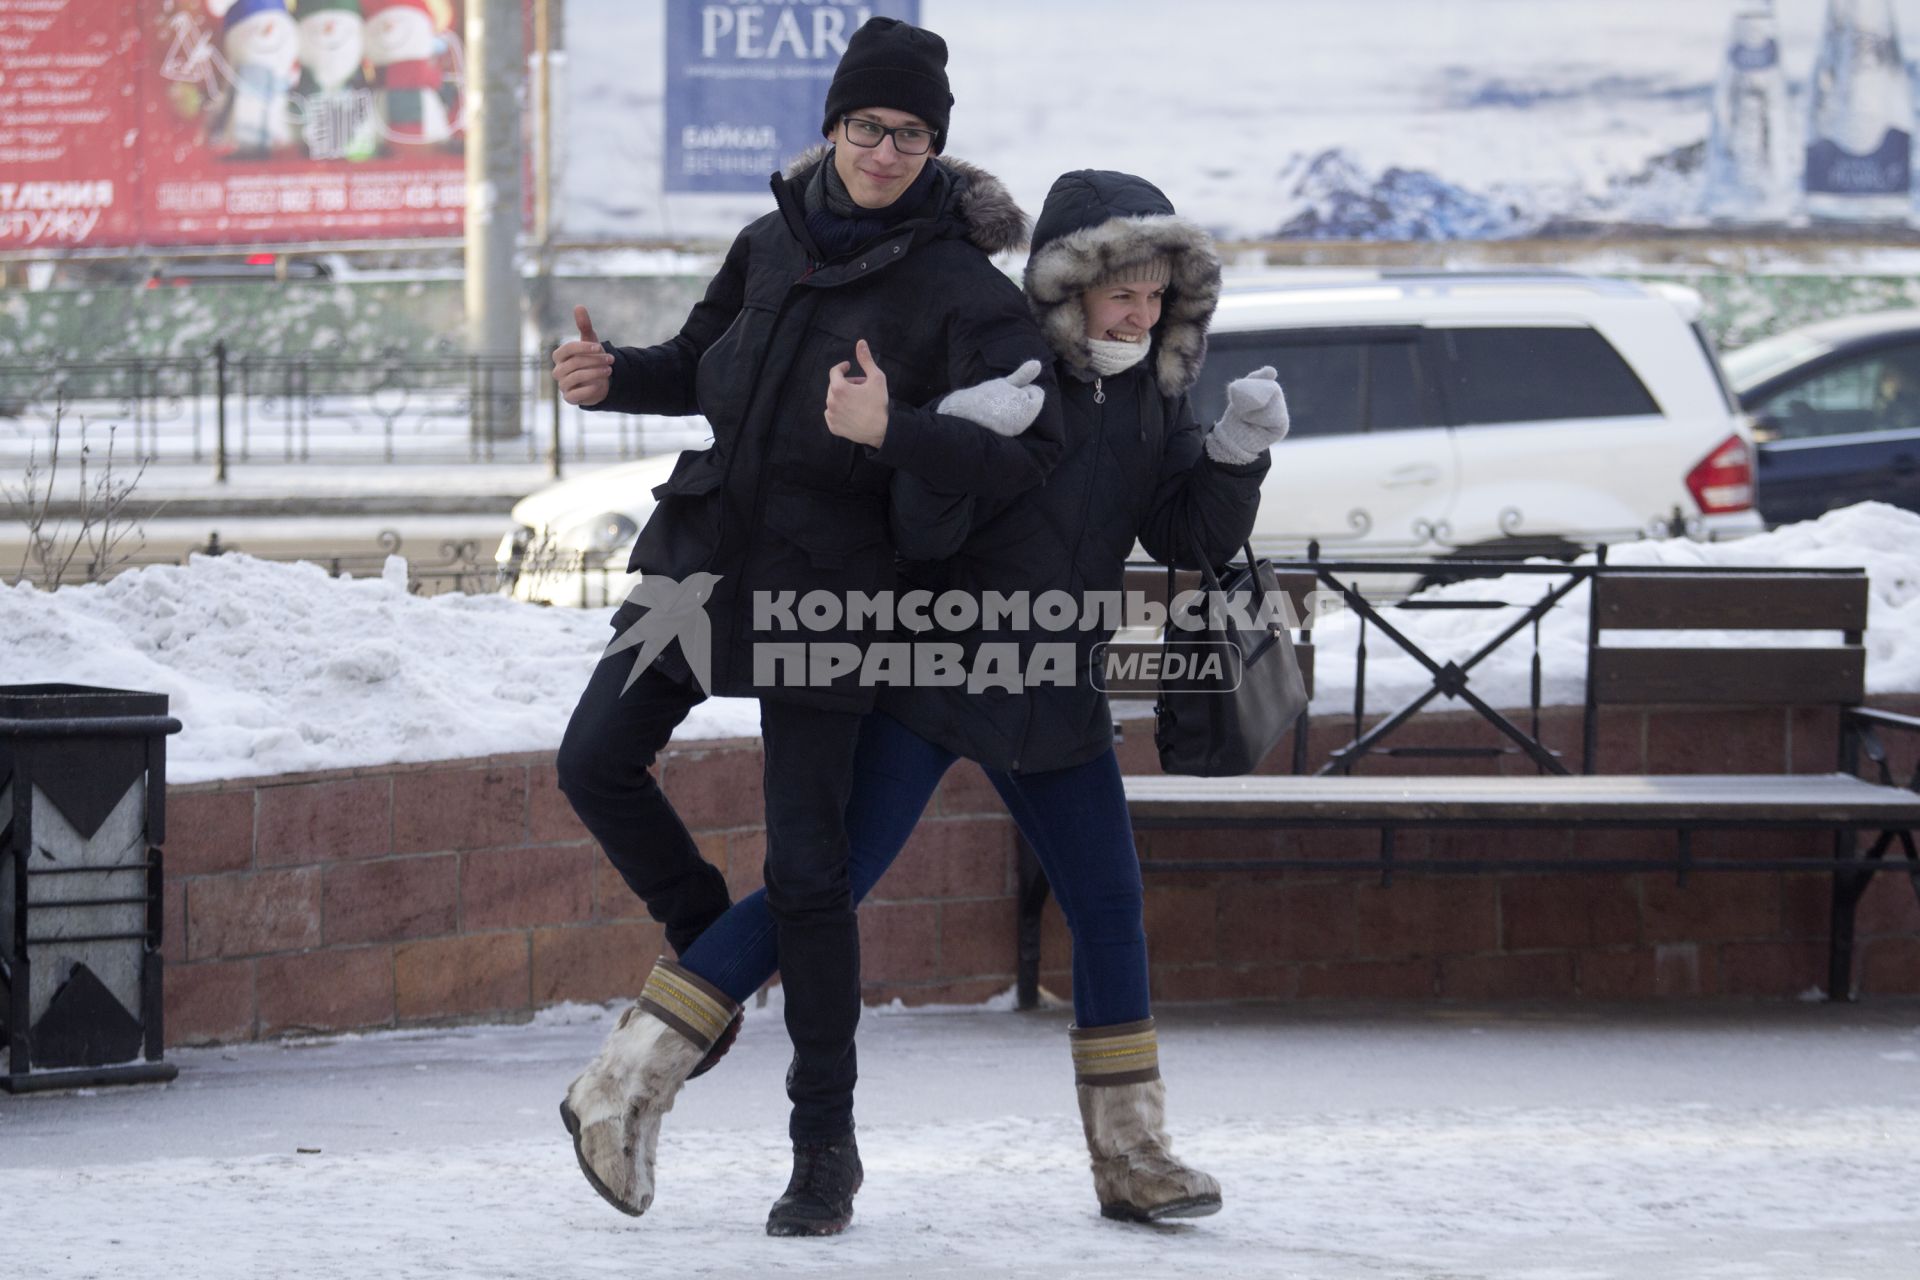 Иркутск. Молодые люди греются на улице в мороз.